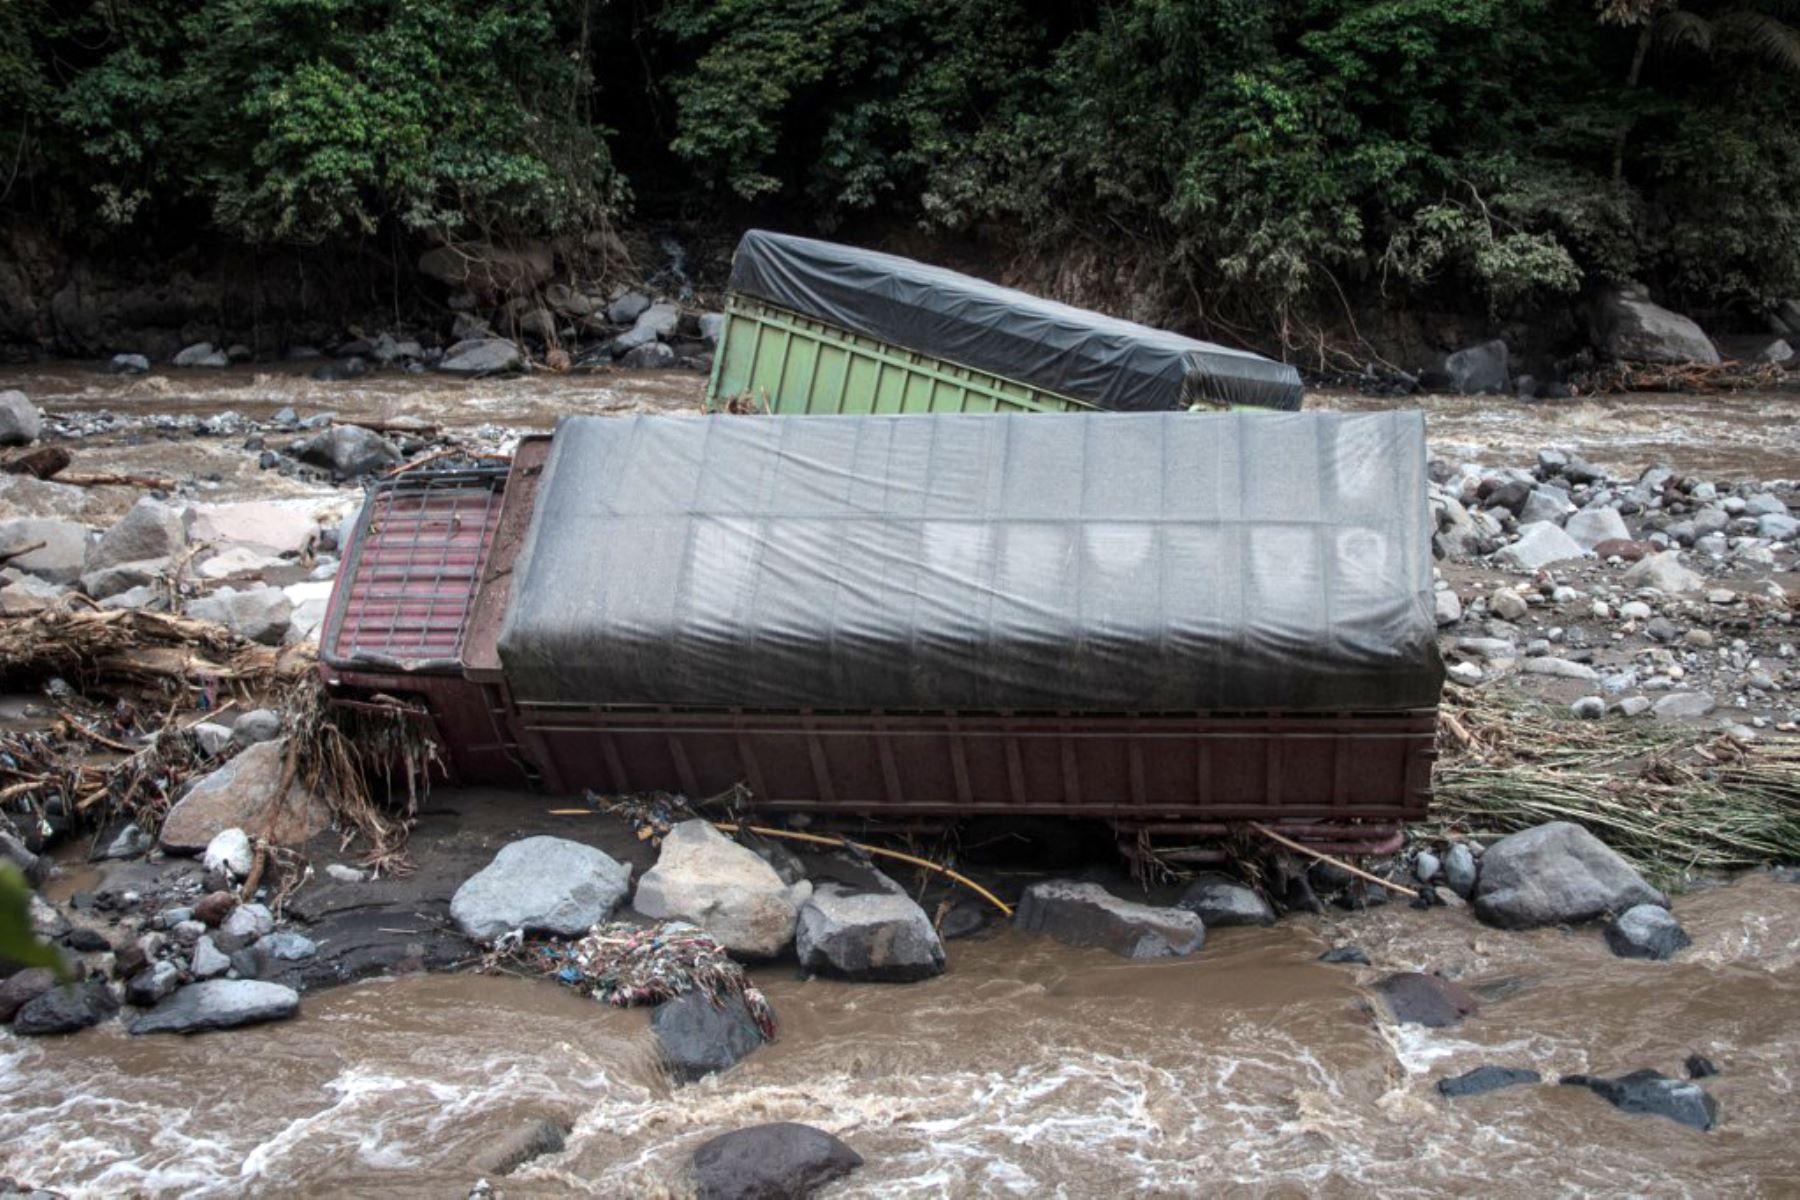 Las fuertes lluvias inundaron vecindarios enteros y arrastraron vehículos a un río cercano, mientras que las cenizas volcánicas y grandes rocas cayeron del Marapi. Foto: AFP